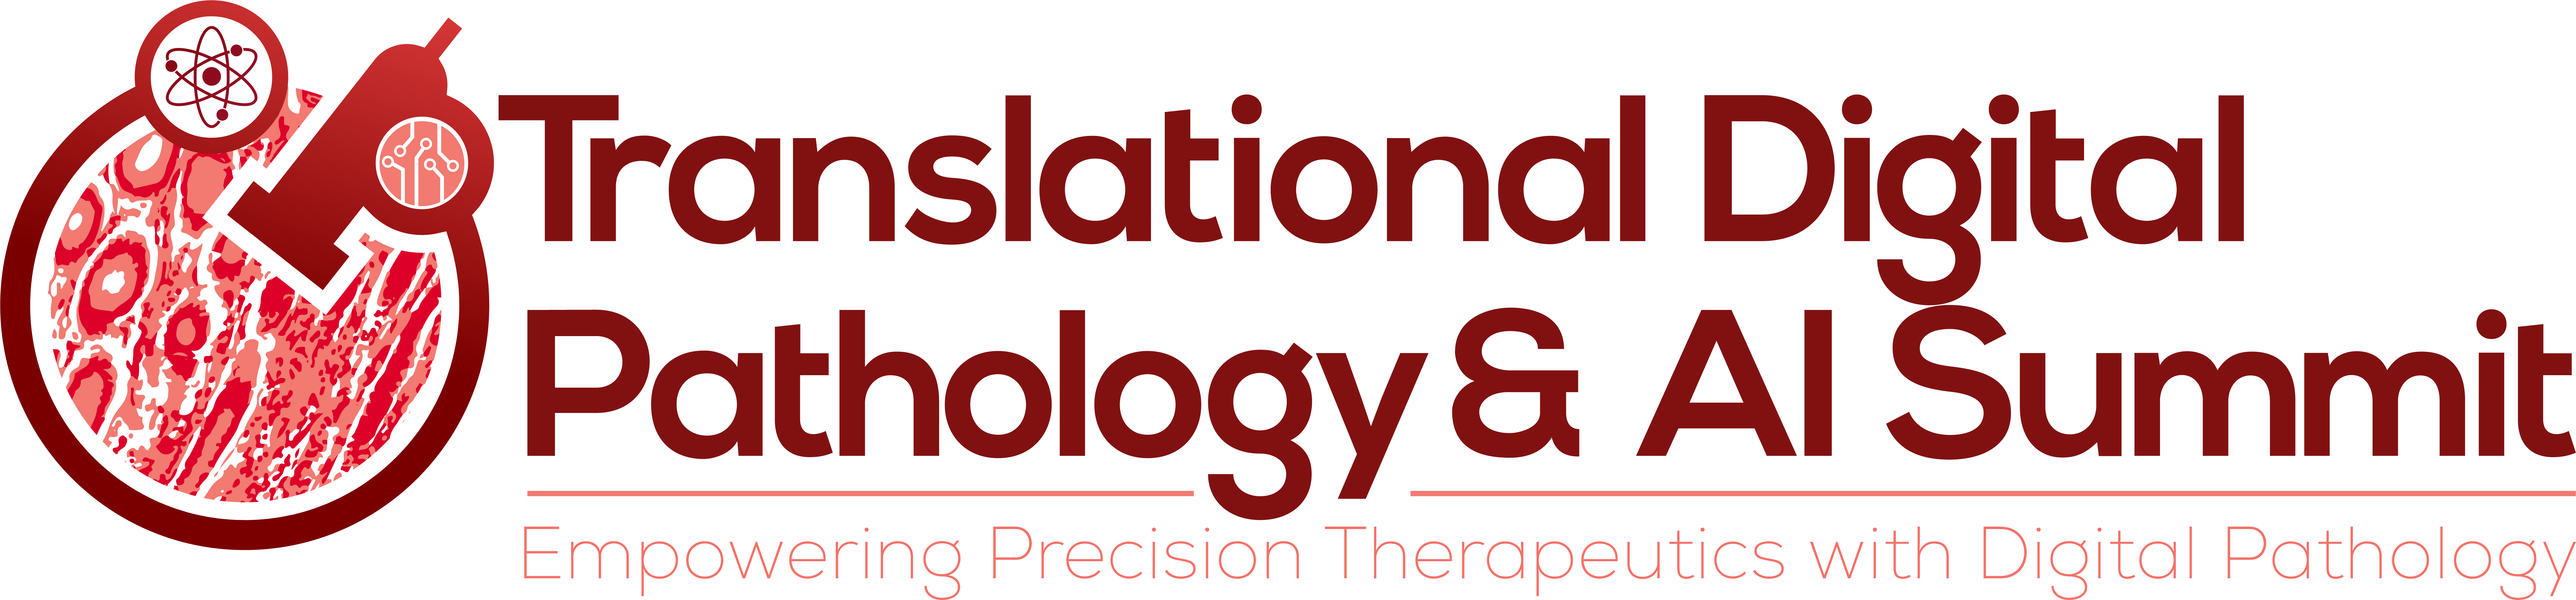 Translational Digital Pathology & AI Summit Logo